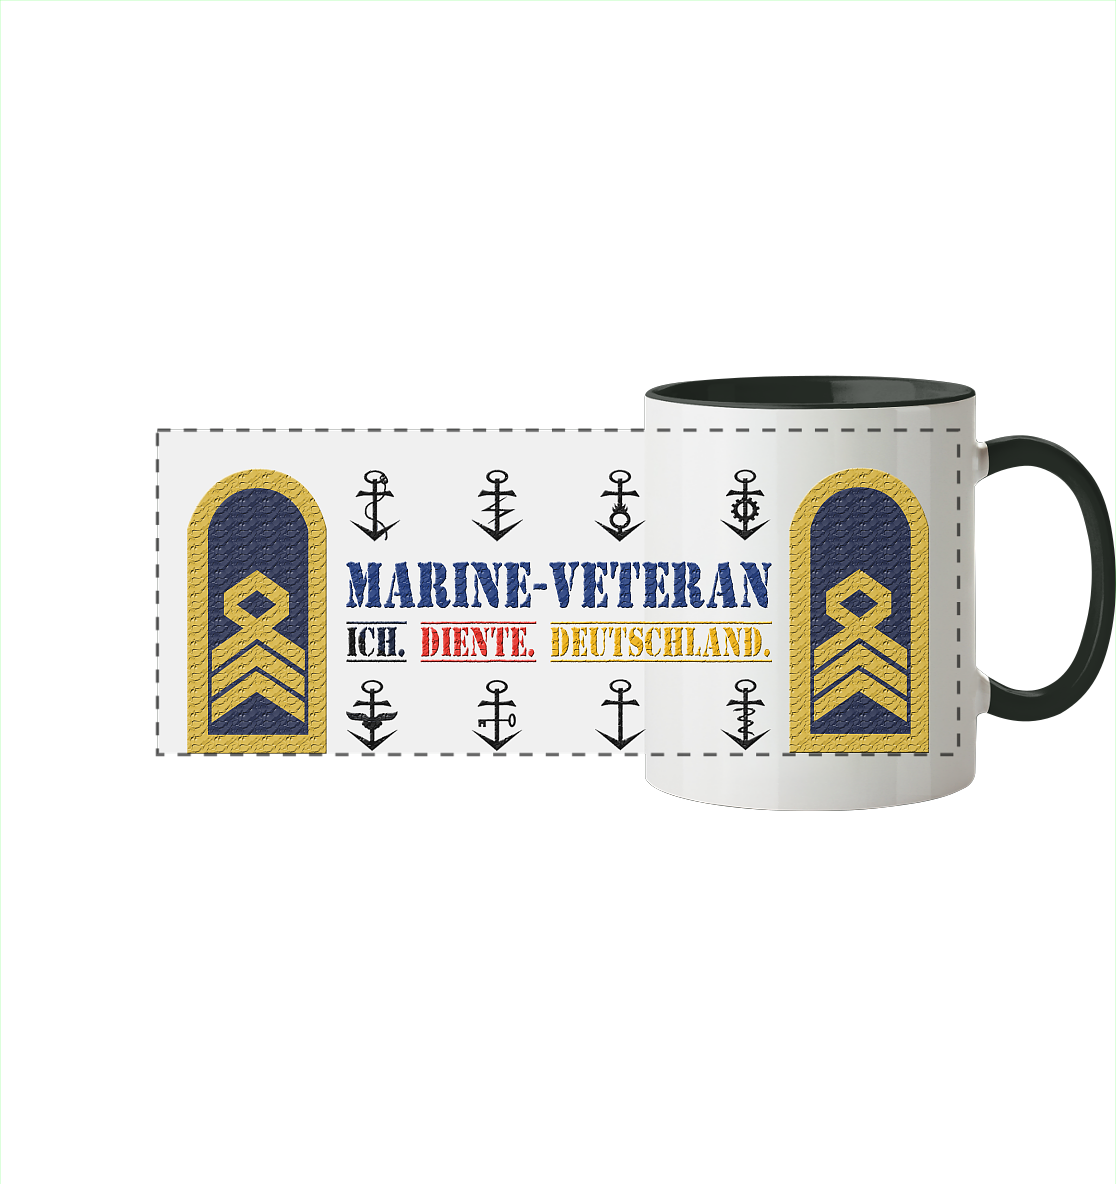 Oberstabsbootsmann MARINE-VETERAN - Panorama Tasse zweifarbig